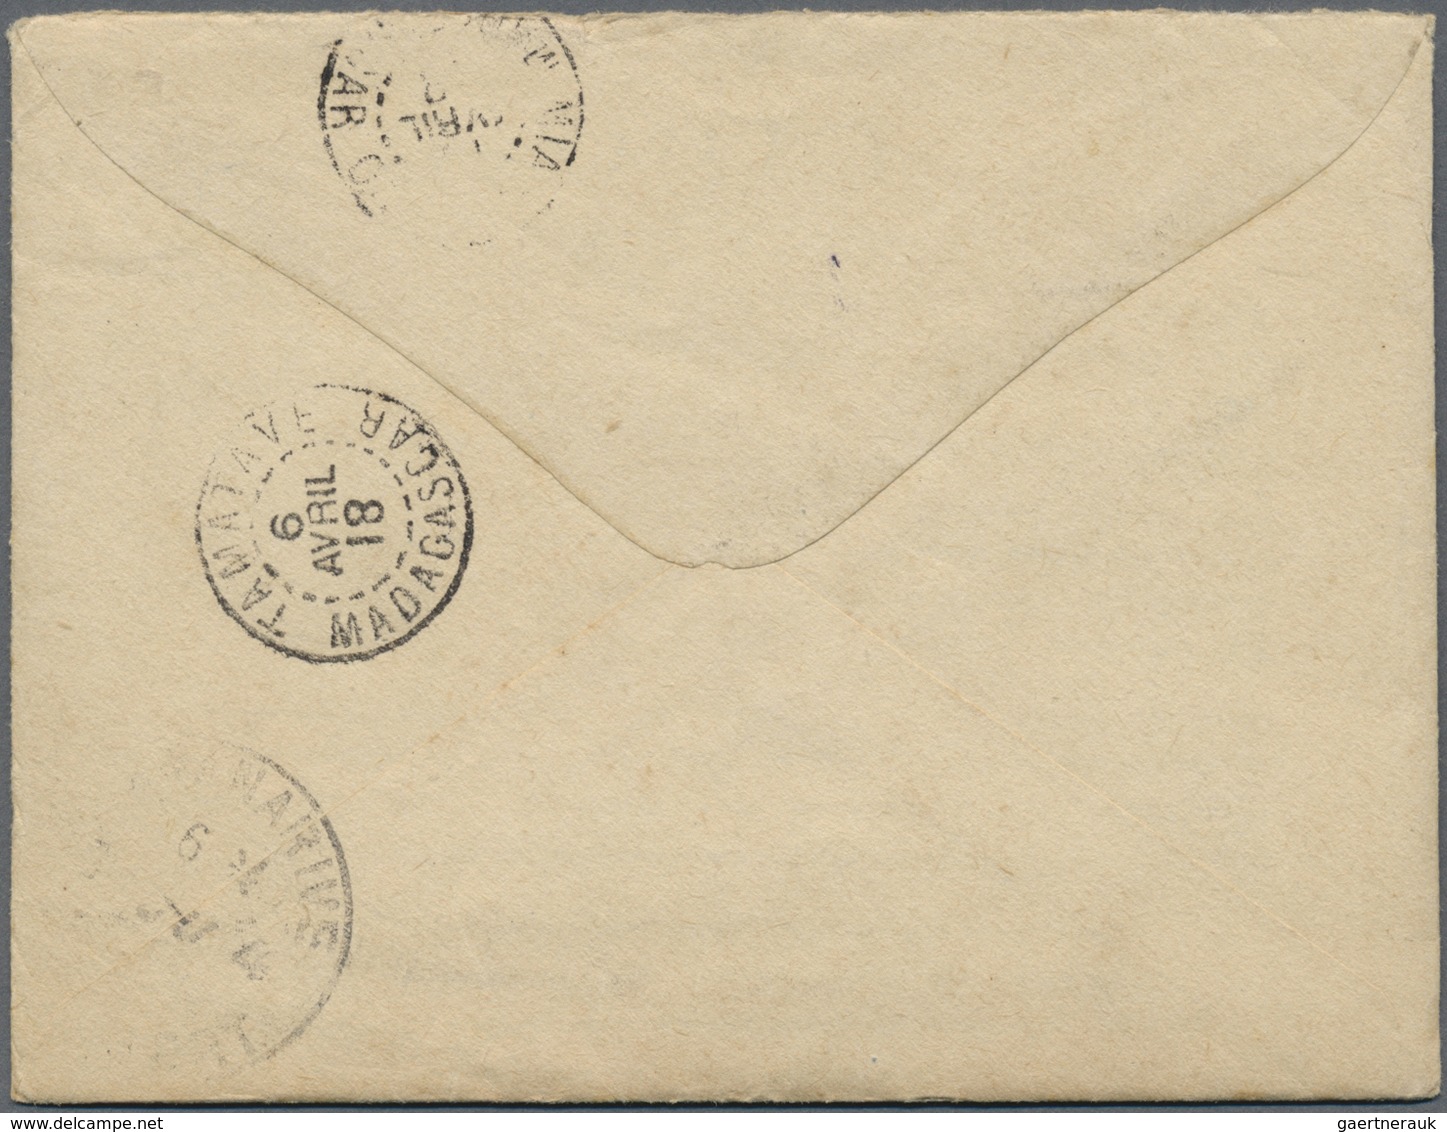 Br Armenien - Besonderheiten: 1918. Illustrated Envelope Written From Port Said Addressed To Madagascar - Armenien